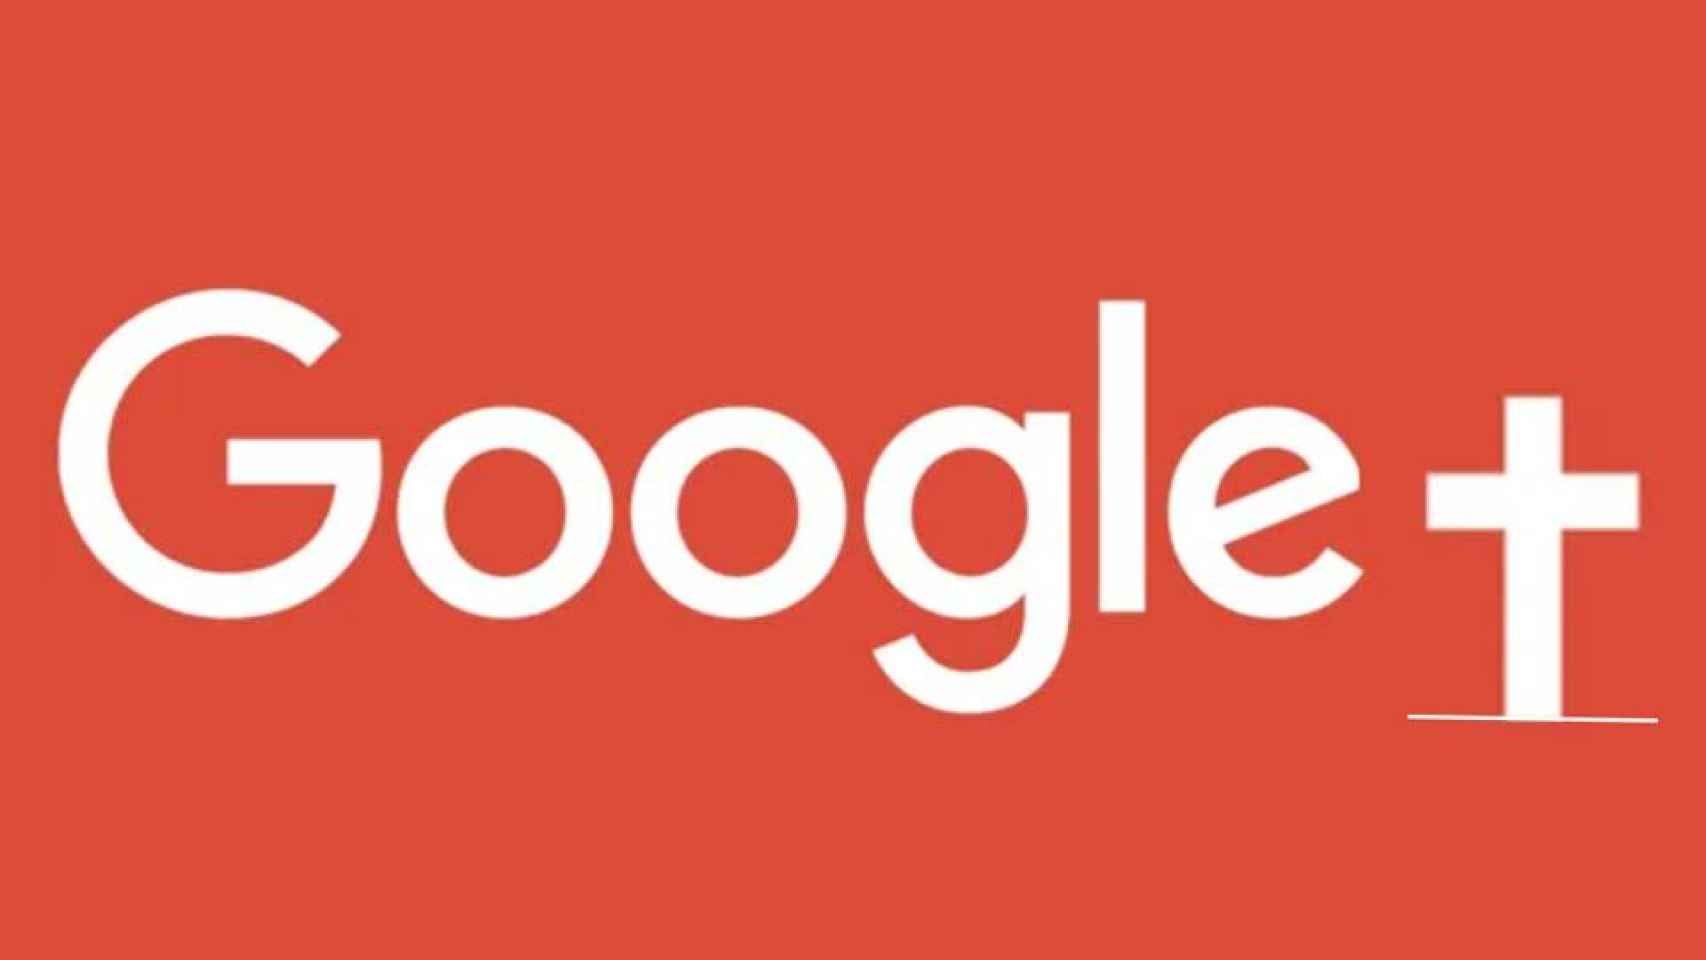 Vuelve a Google+ para descargar tus datos o se borrarán por el cierre